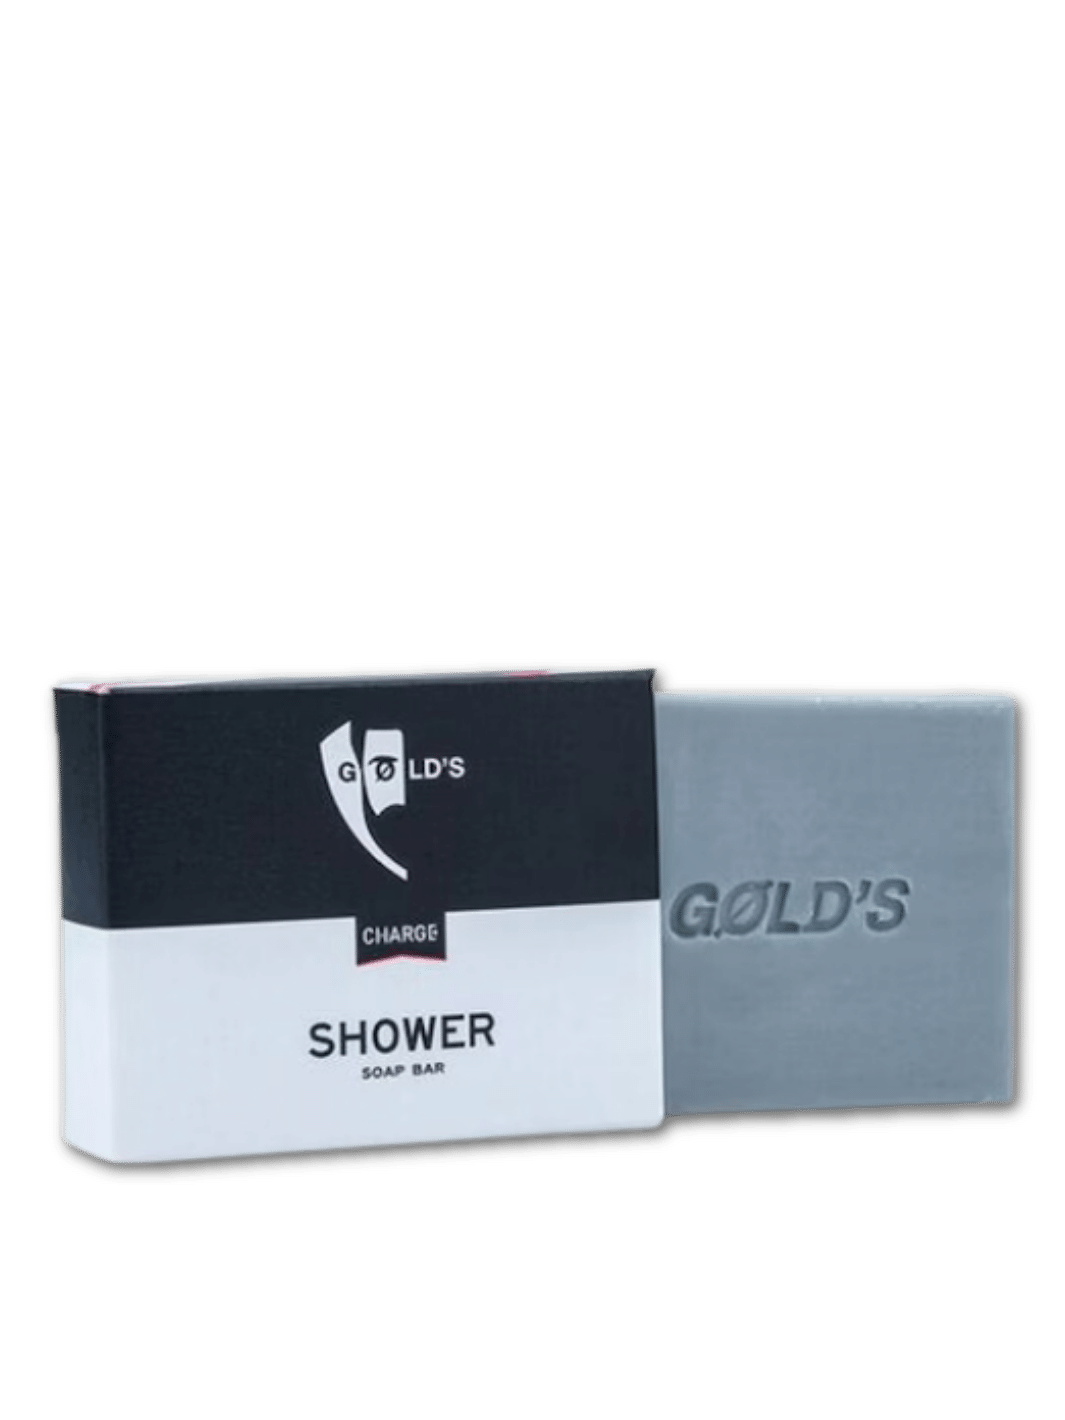 GØLD'S Shower Soap 100g, verfügbar bei Phullcutz, bietet natürliche Pflege und ein erfrischendes Duscherlebnis mit biologischen Inhaltsstoffen.